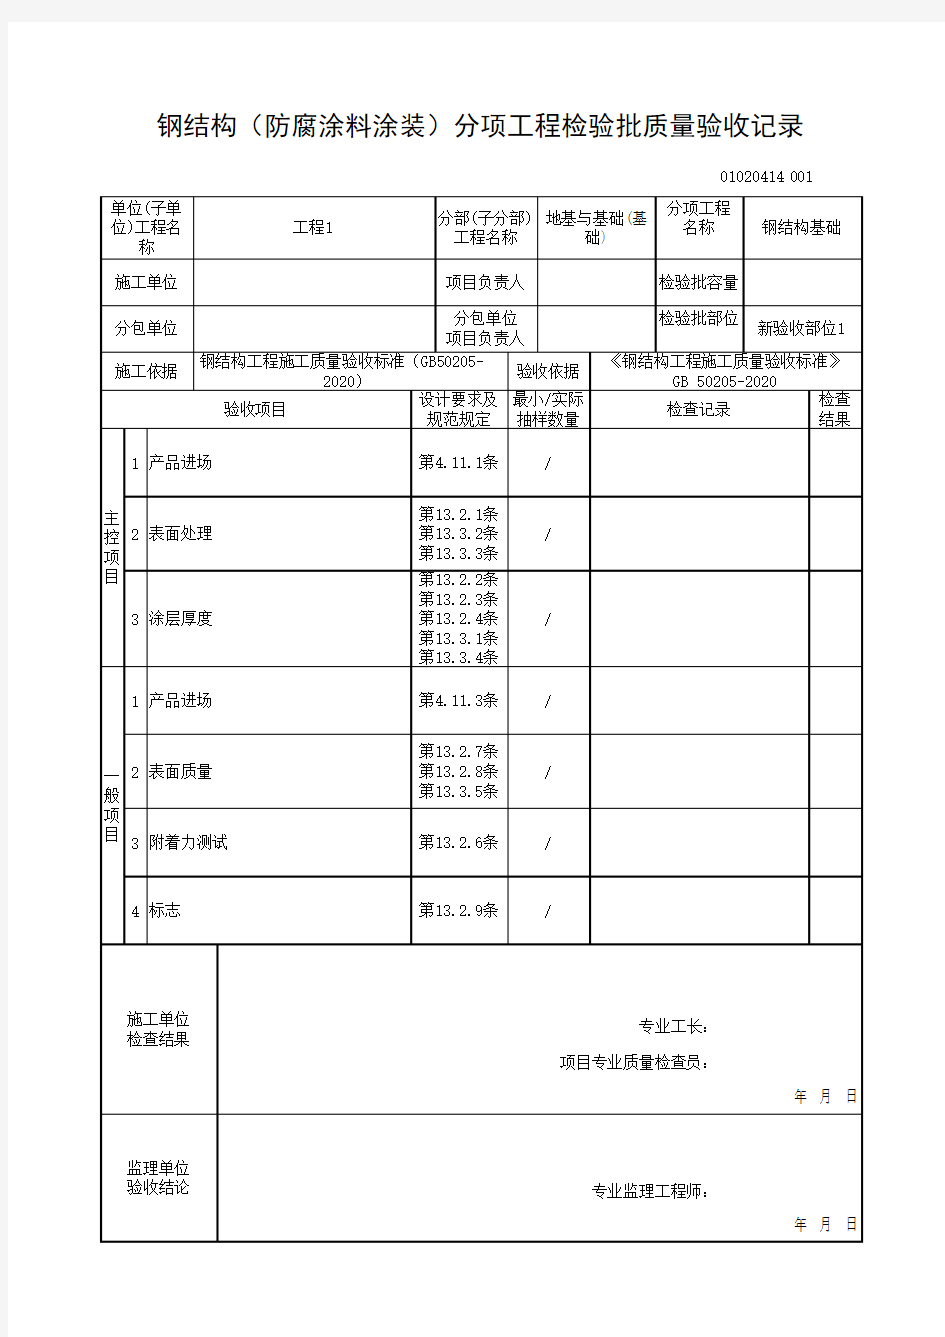 (上海市新版)钢结构(防腐涂料涂装)分项工程检验批质量验收记录